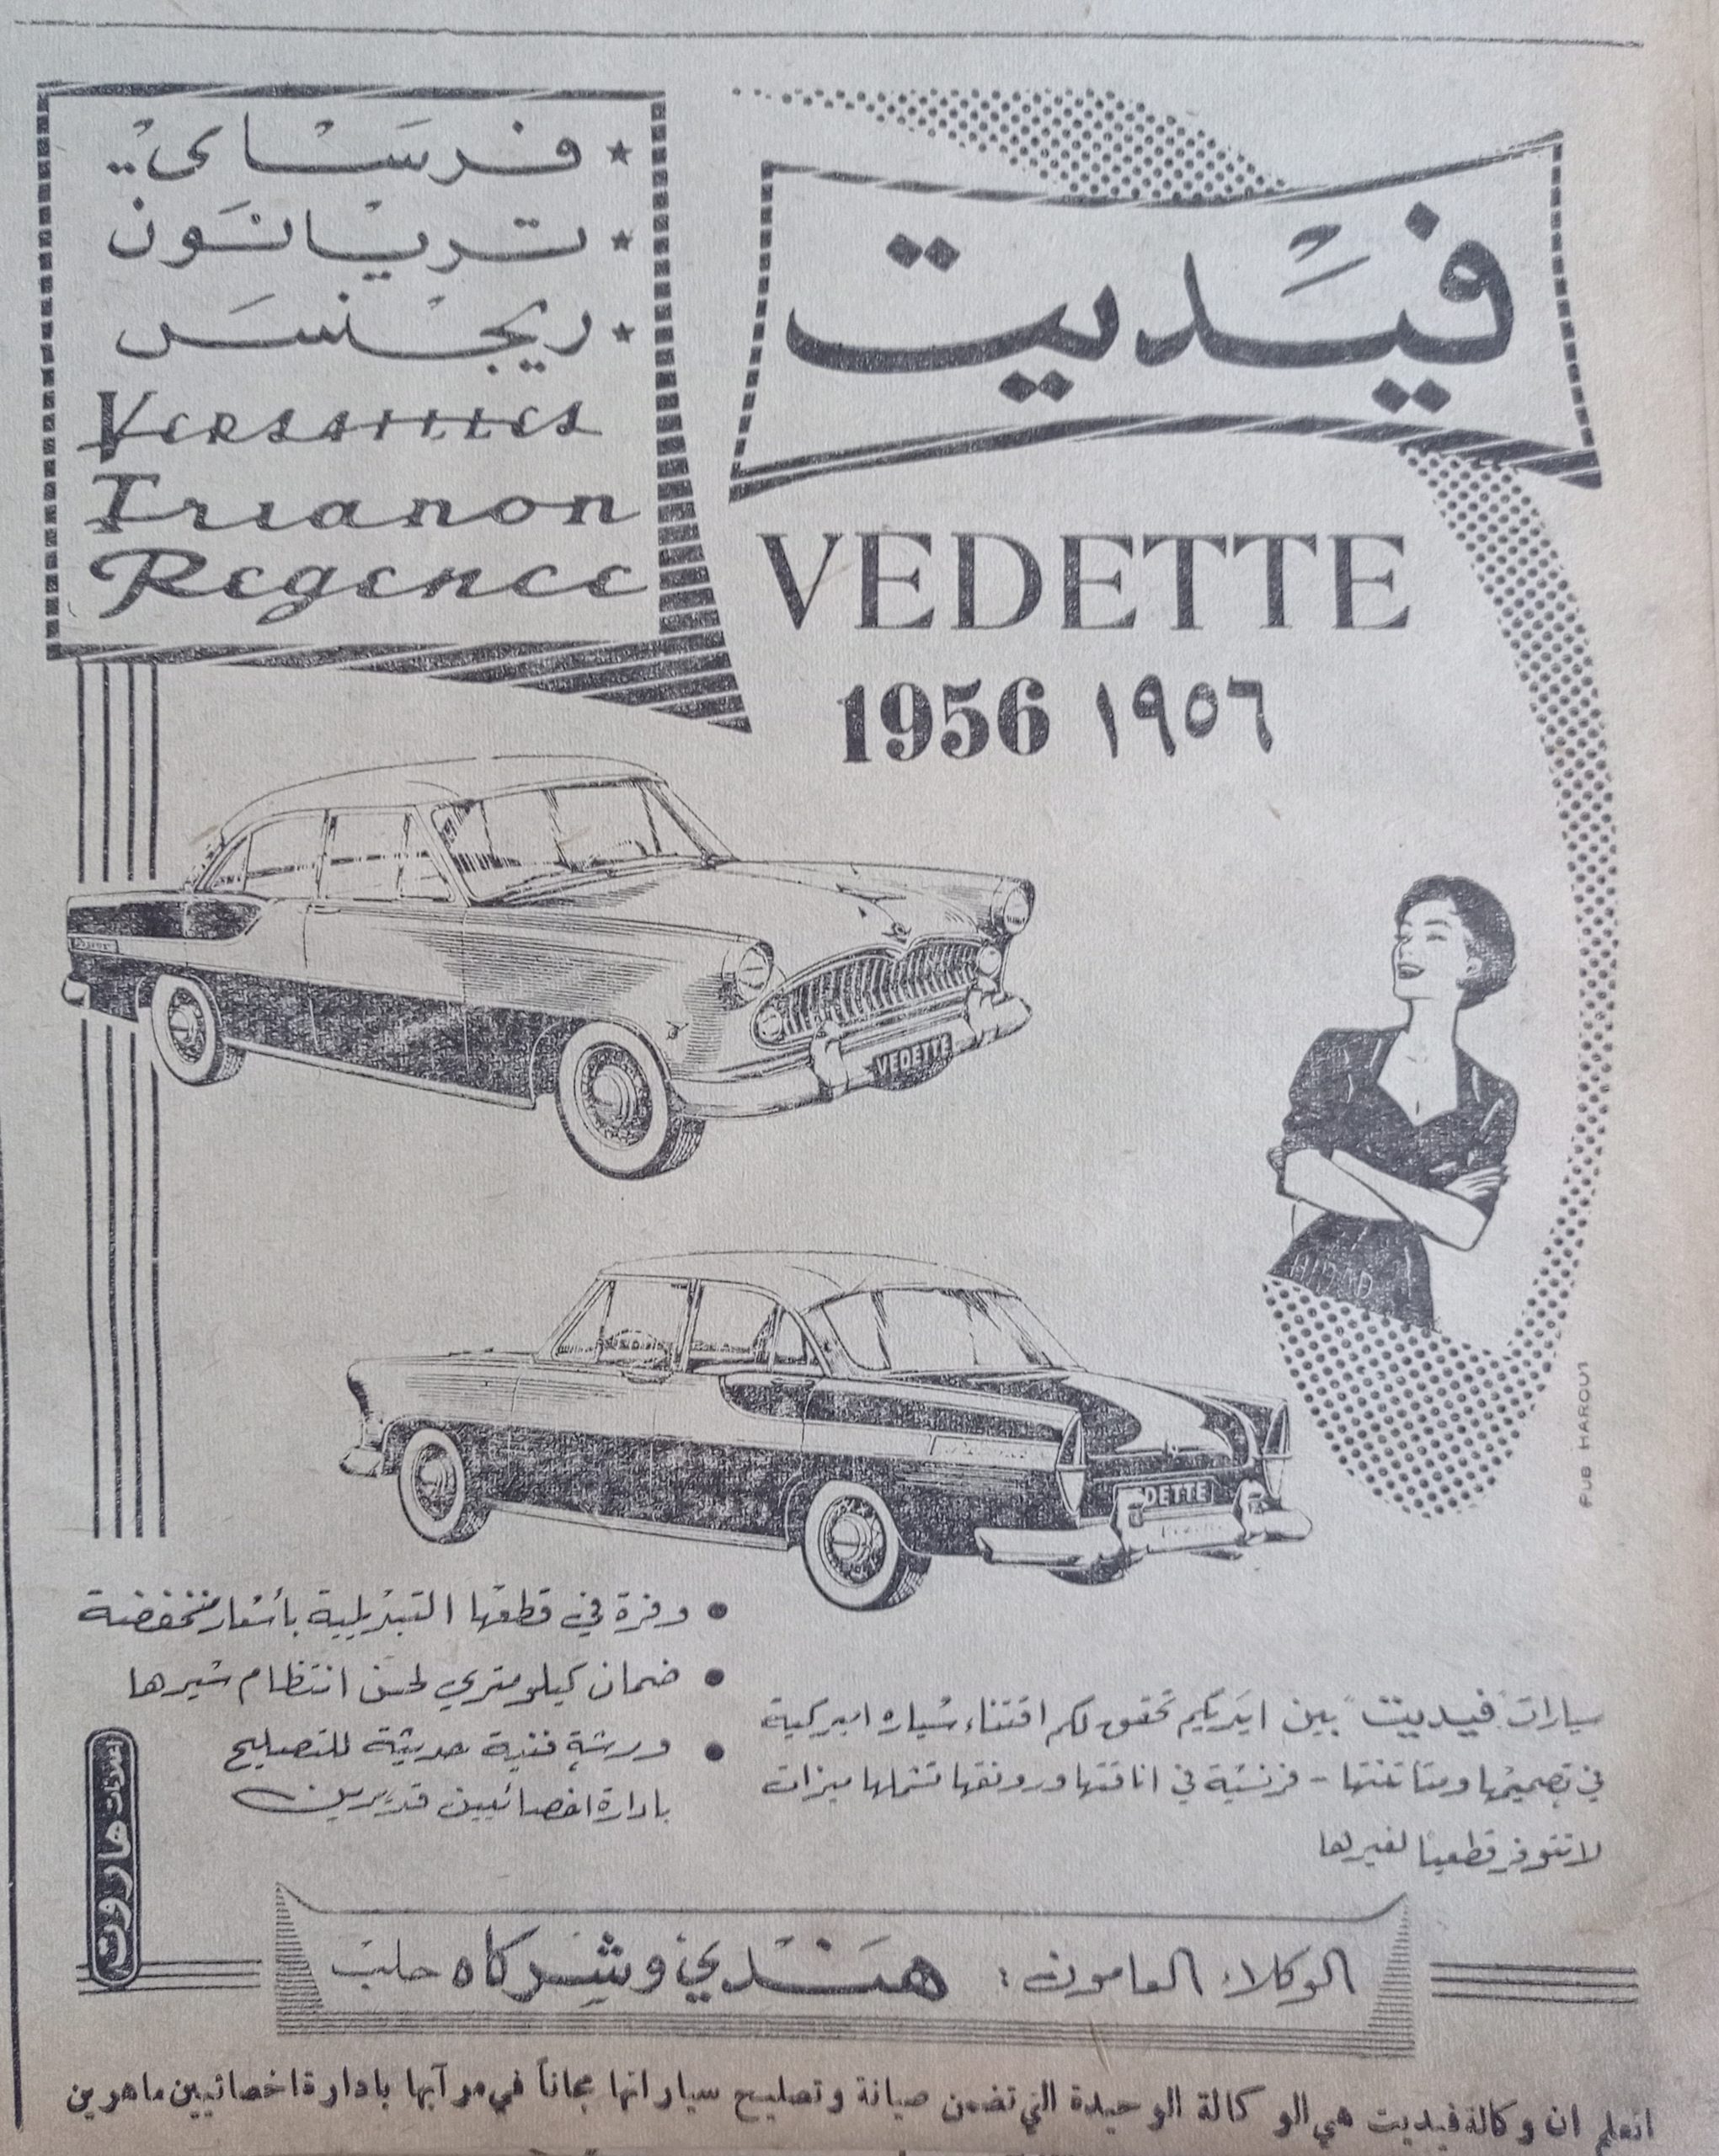 التاريخ السوري المعاصر - إعلان عن سيارات فيديت VEDETTE الأمريكية في حلب عام 1956